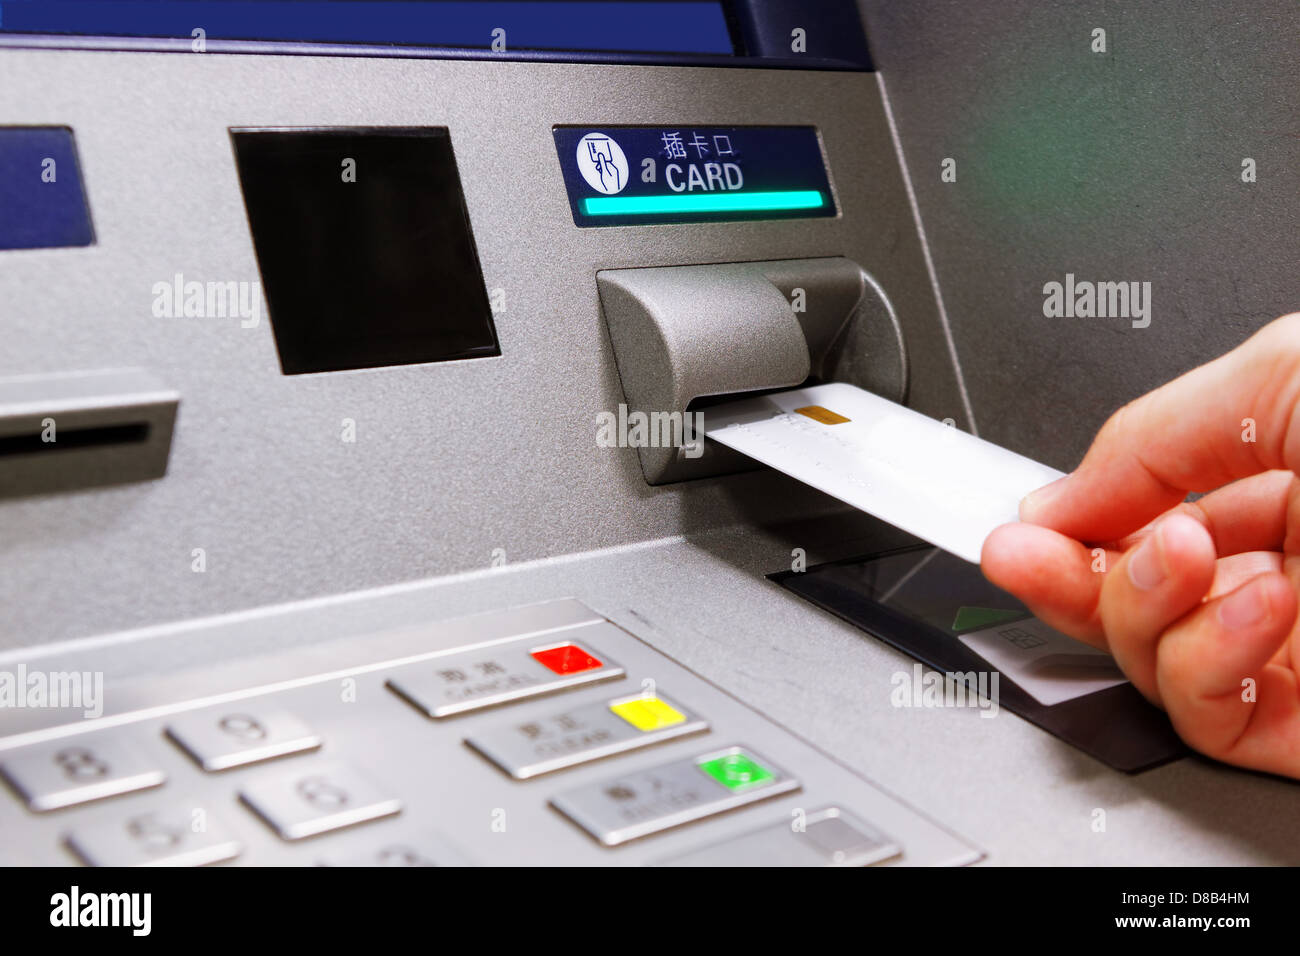 insert card in a ATM machine Stock Photo